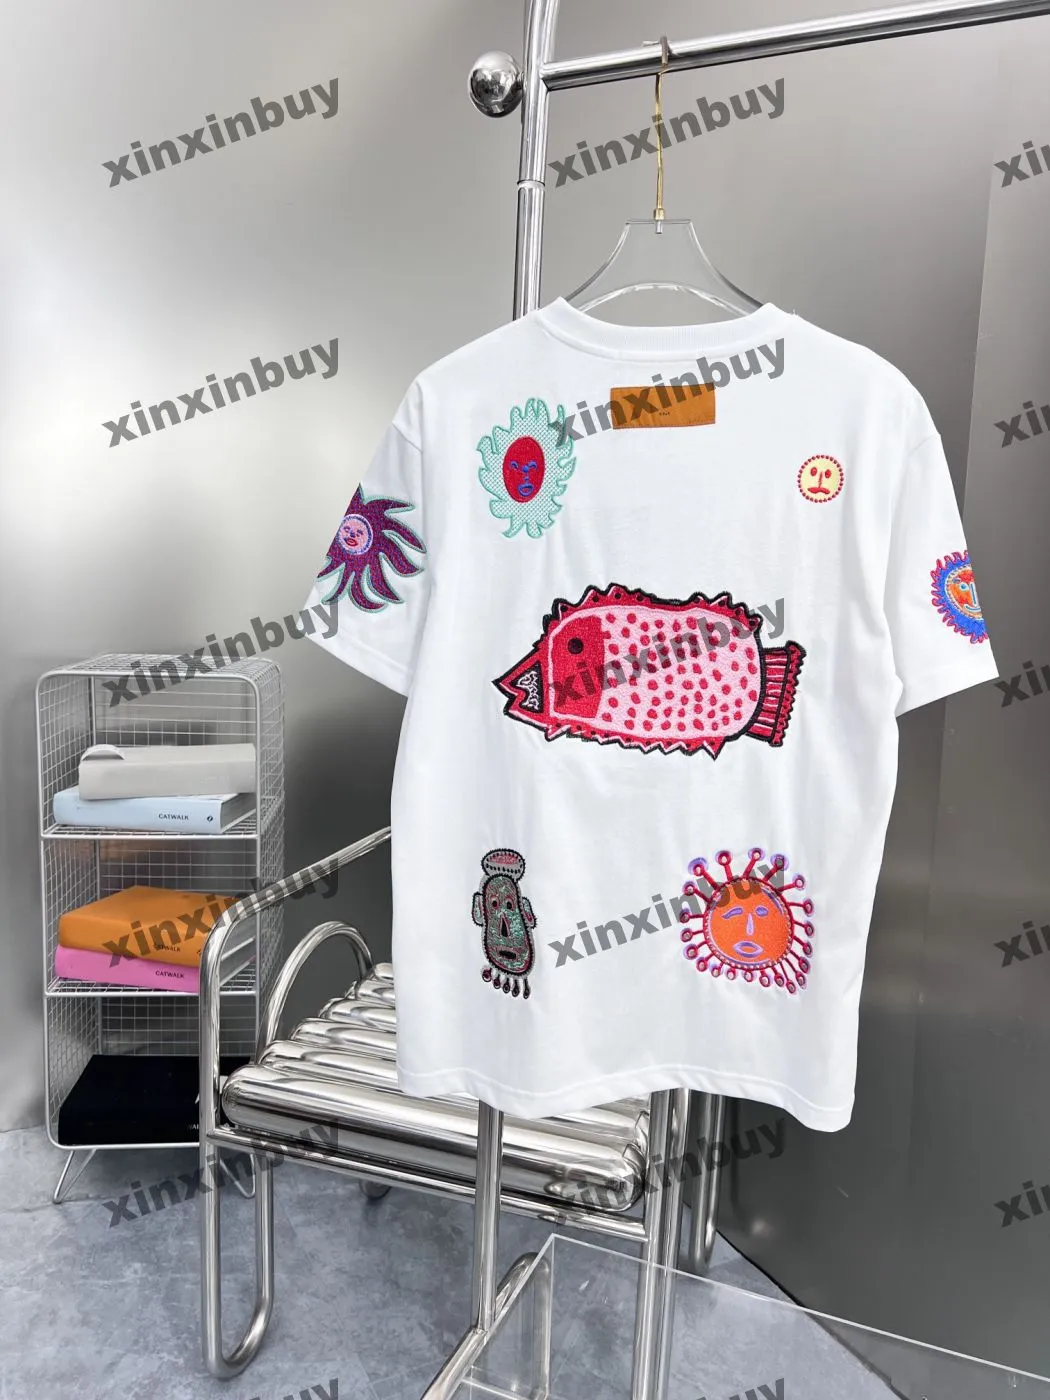 Xinxinbuy Homens Designer Tee Camiseta 23ss Rosto Bordado Infinito Pontos Padrão Abóbora Manga Curta Algodão Mulheres Branco S-XL